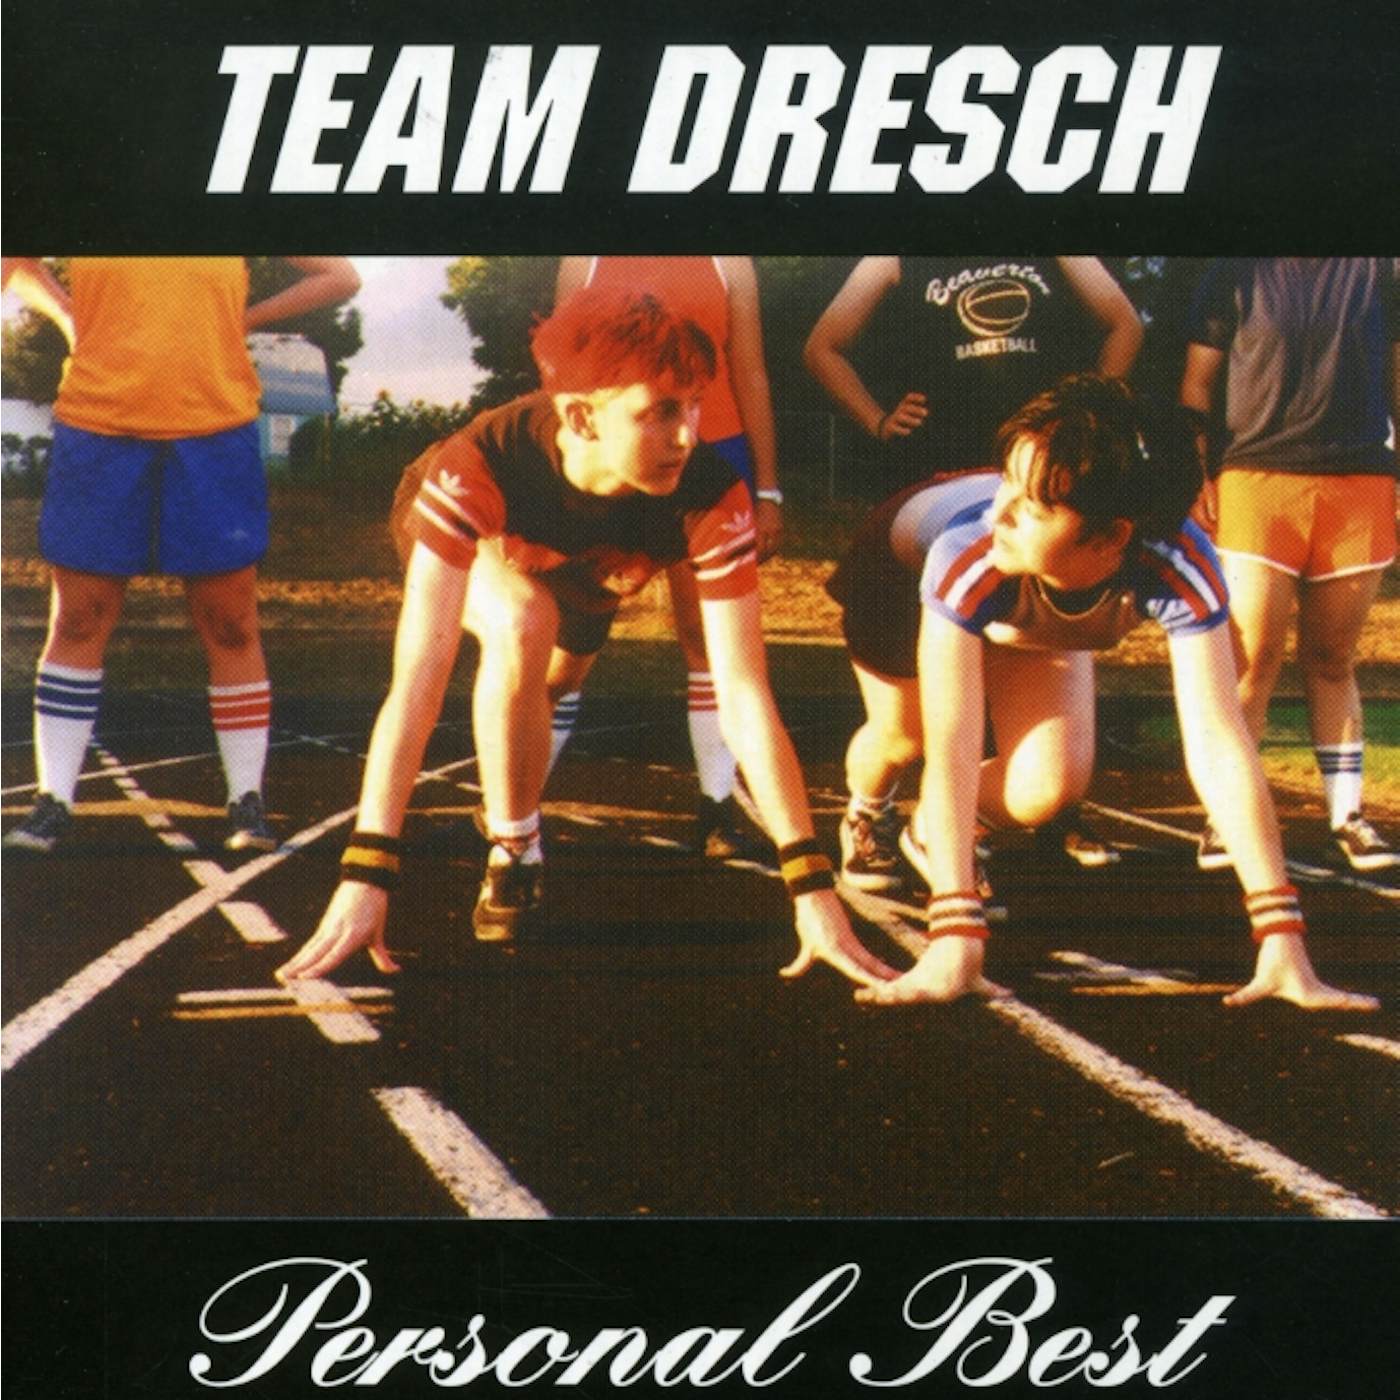 Team Dresch PERSONAL BEST CD